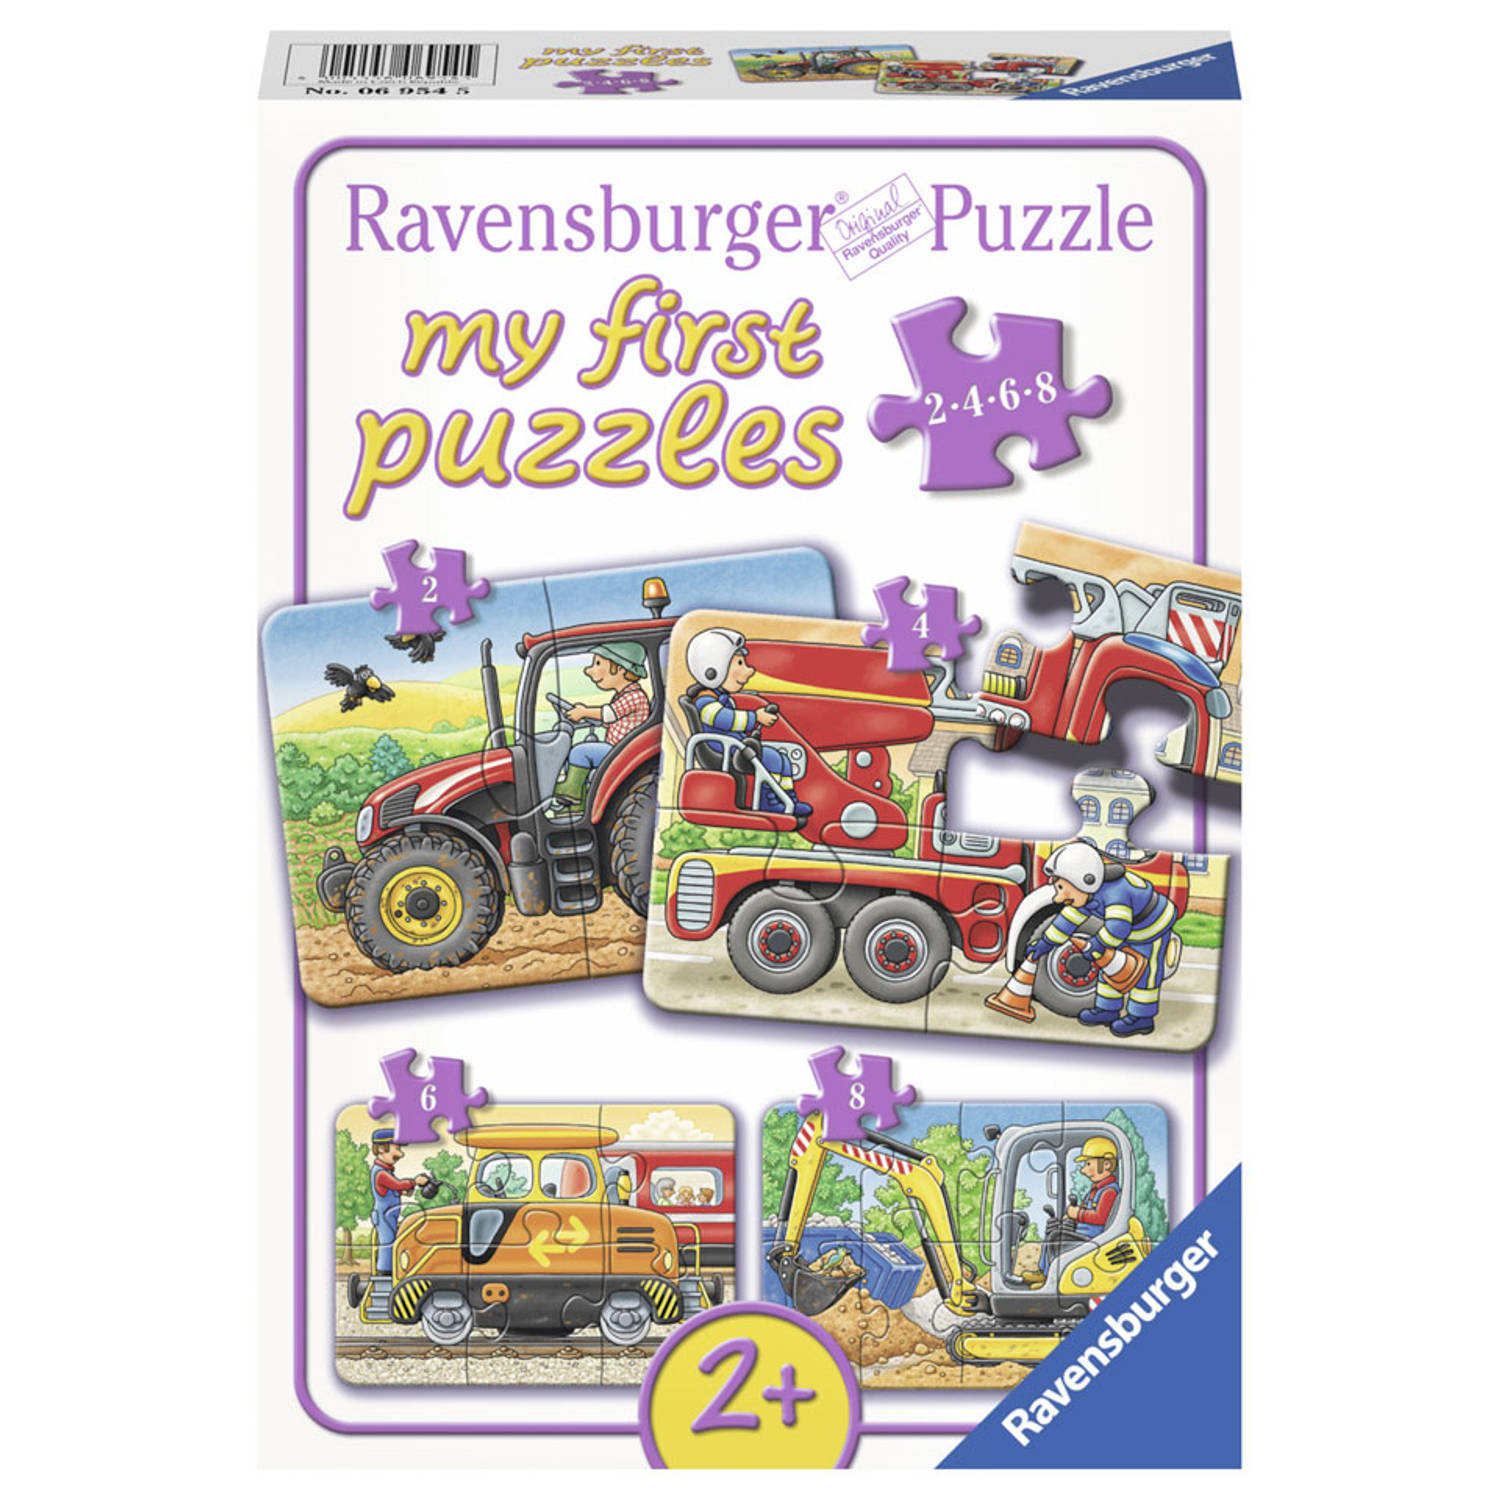 Ravensburger Op het werk- My First puzzels -2+4+6+8 stukjes - kinderpuzzel